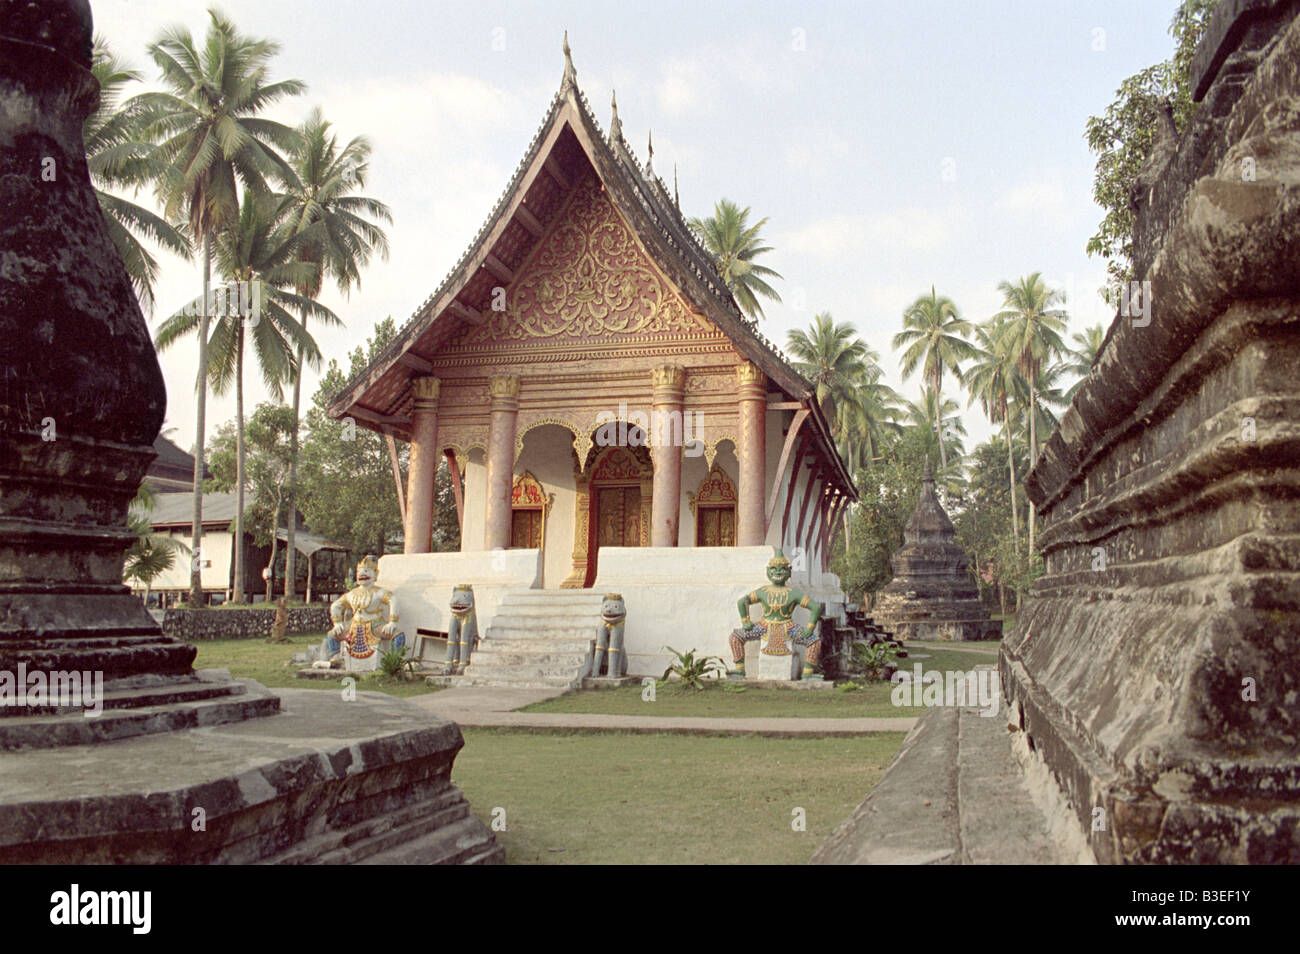 Luang prabang temple laos Stock Photo